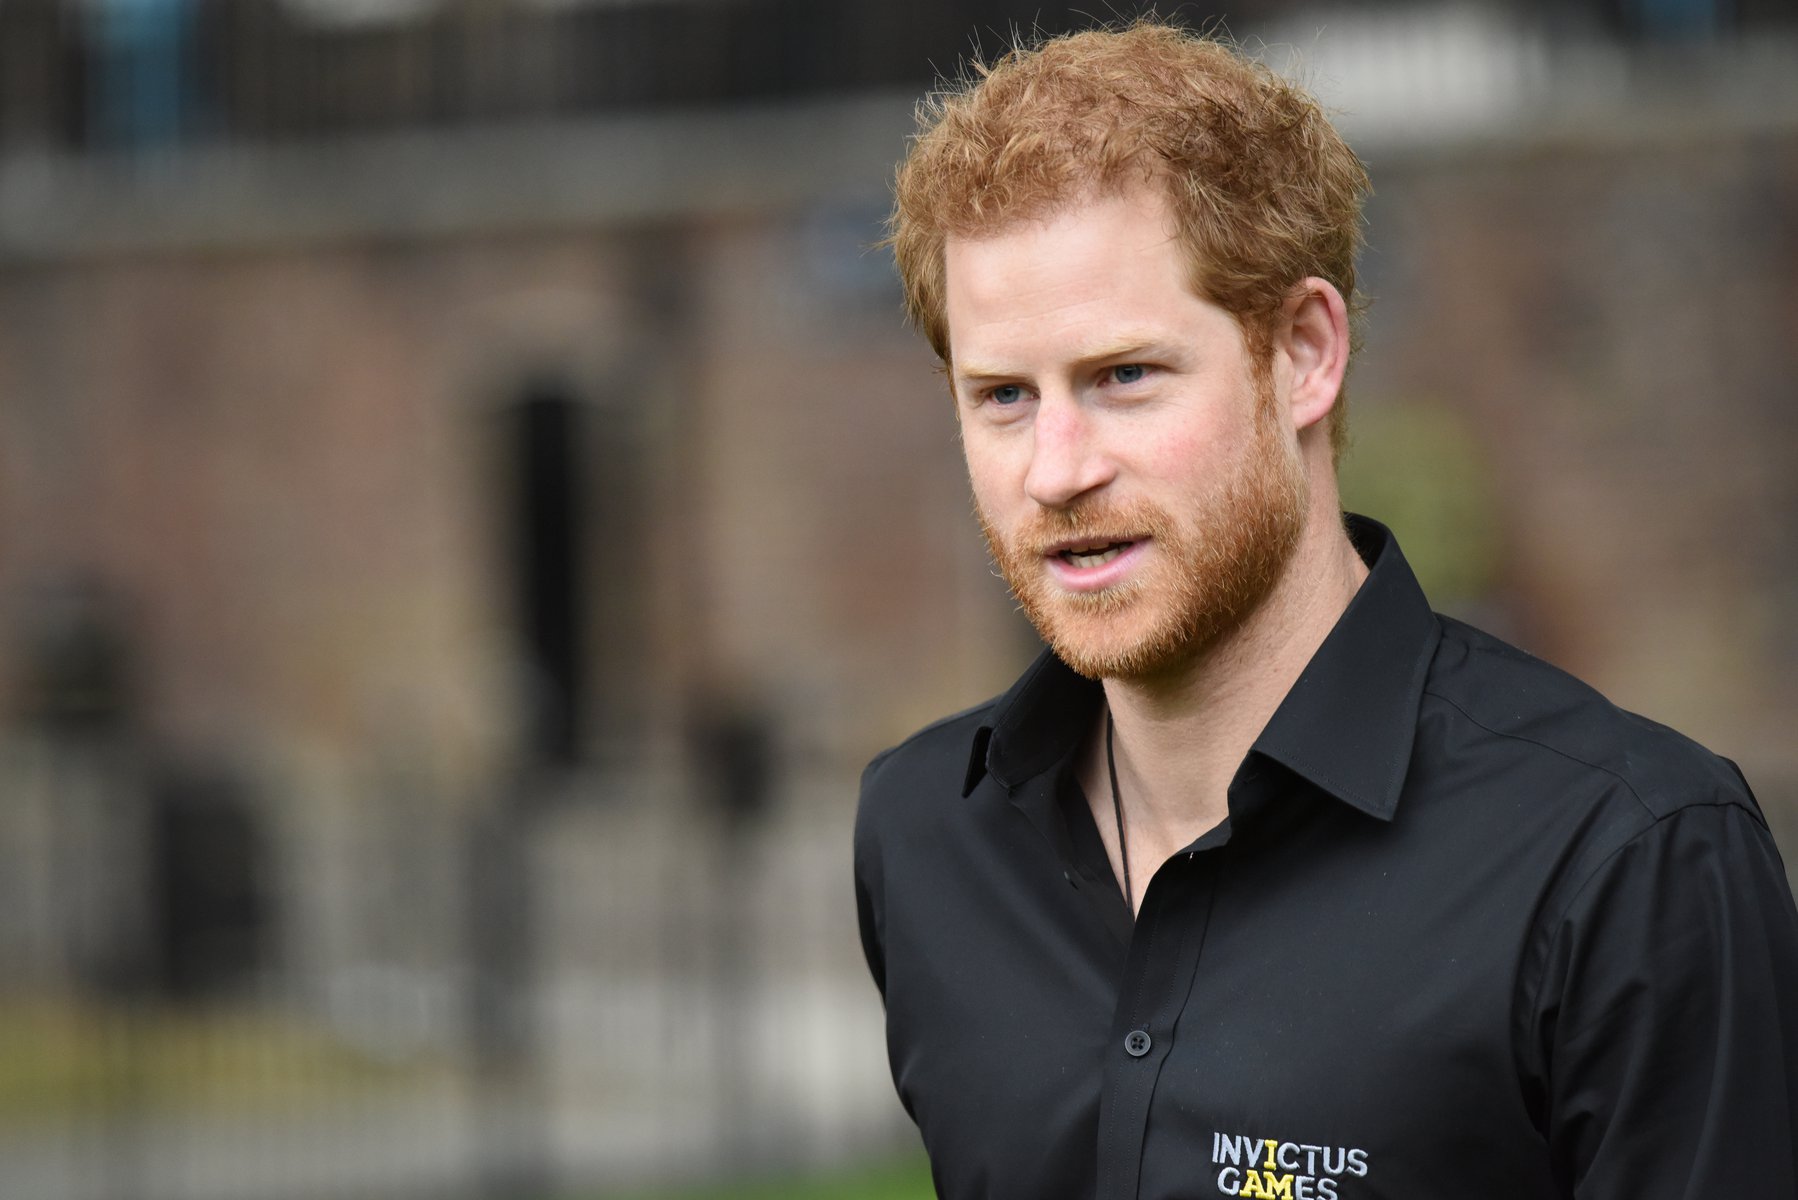 Γεμίζει το ταμείο ο Πρίγκιπας Χάρι: Δικαιώθηκε στη δικαστική διαμάχη με την Daily Mirror και θα πάρει 6ψήφια αποζημίωση